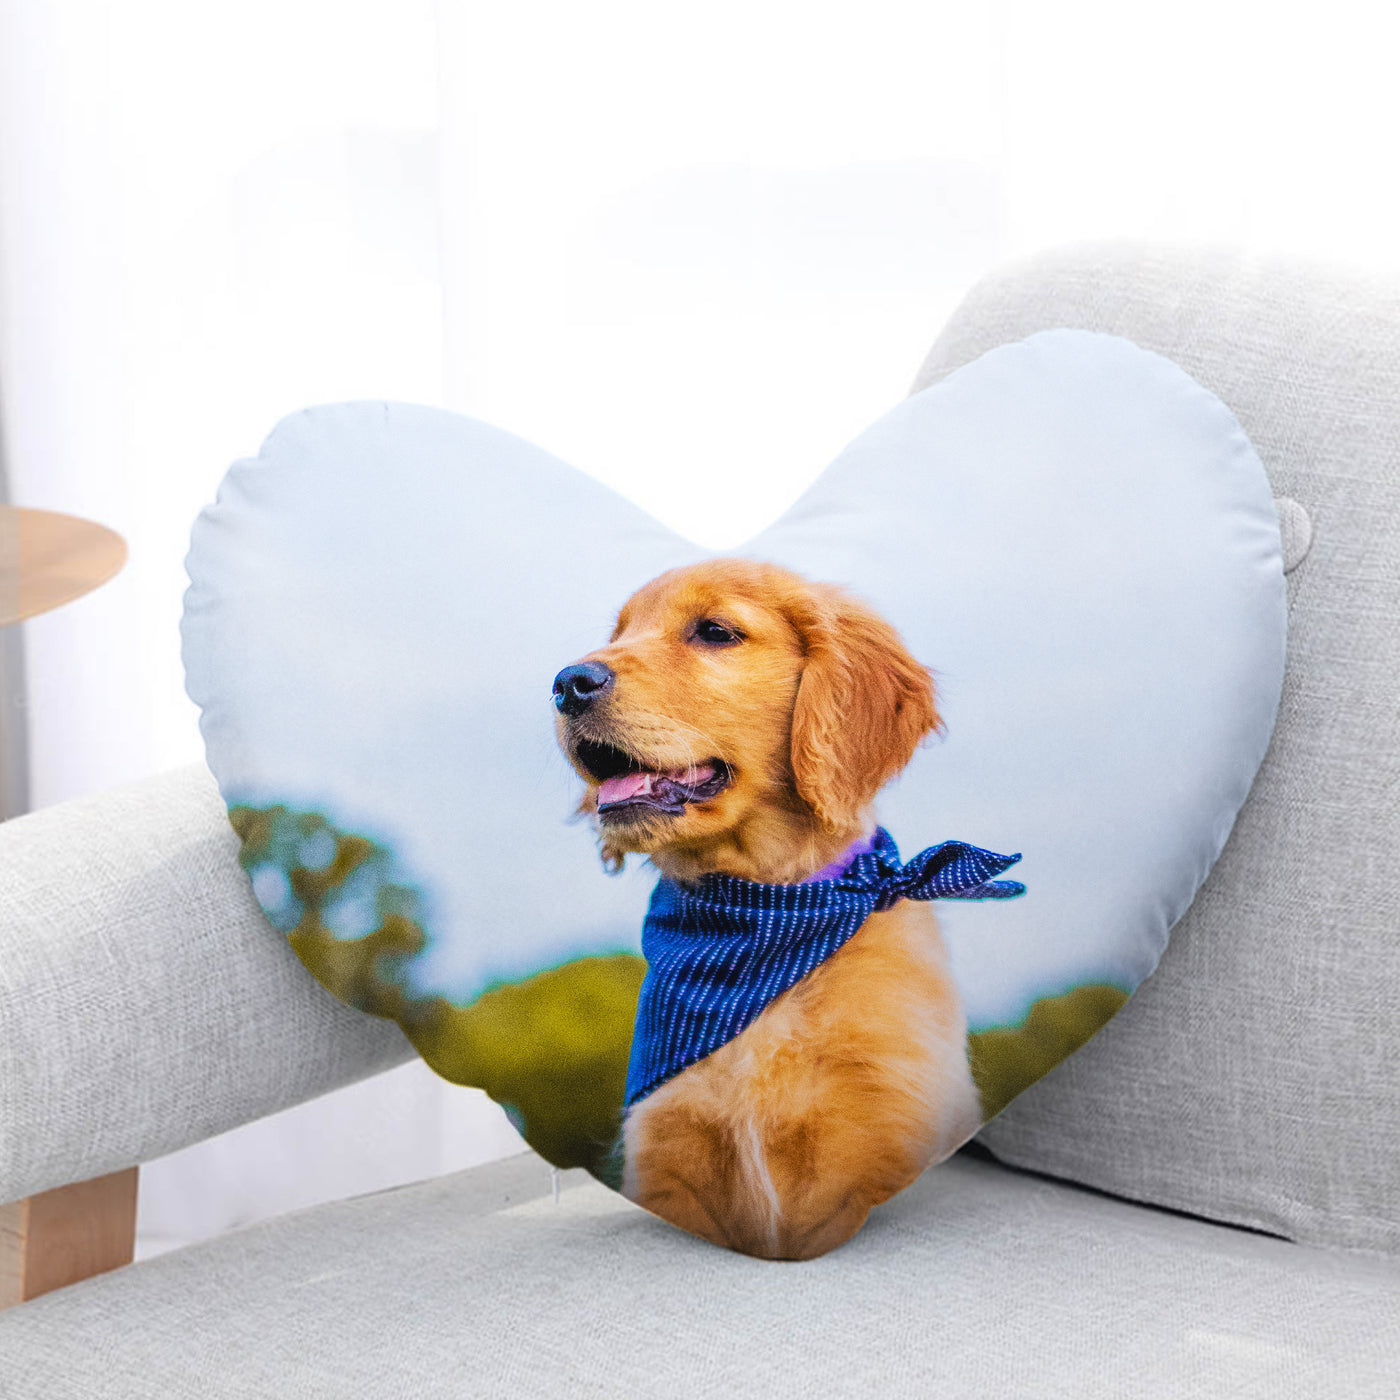 Custom Pet Pillow, Pet Photo Pillow, Personalized Pet Pillow